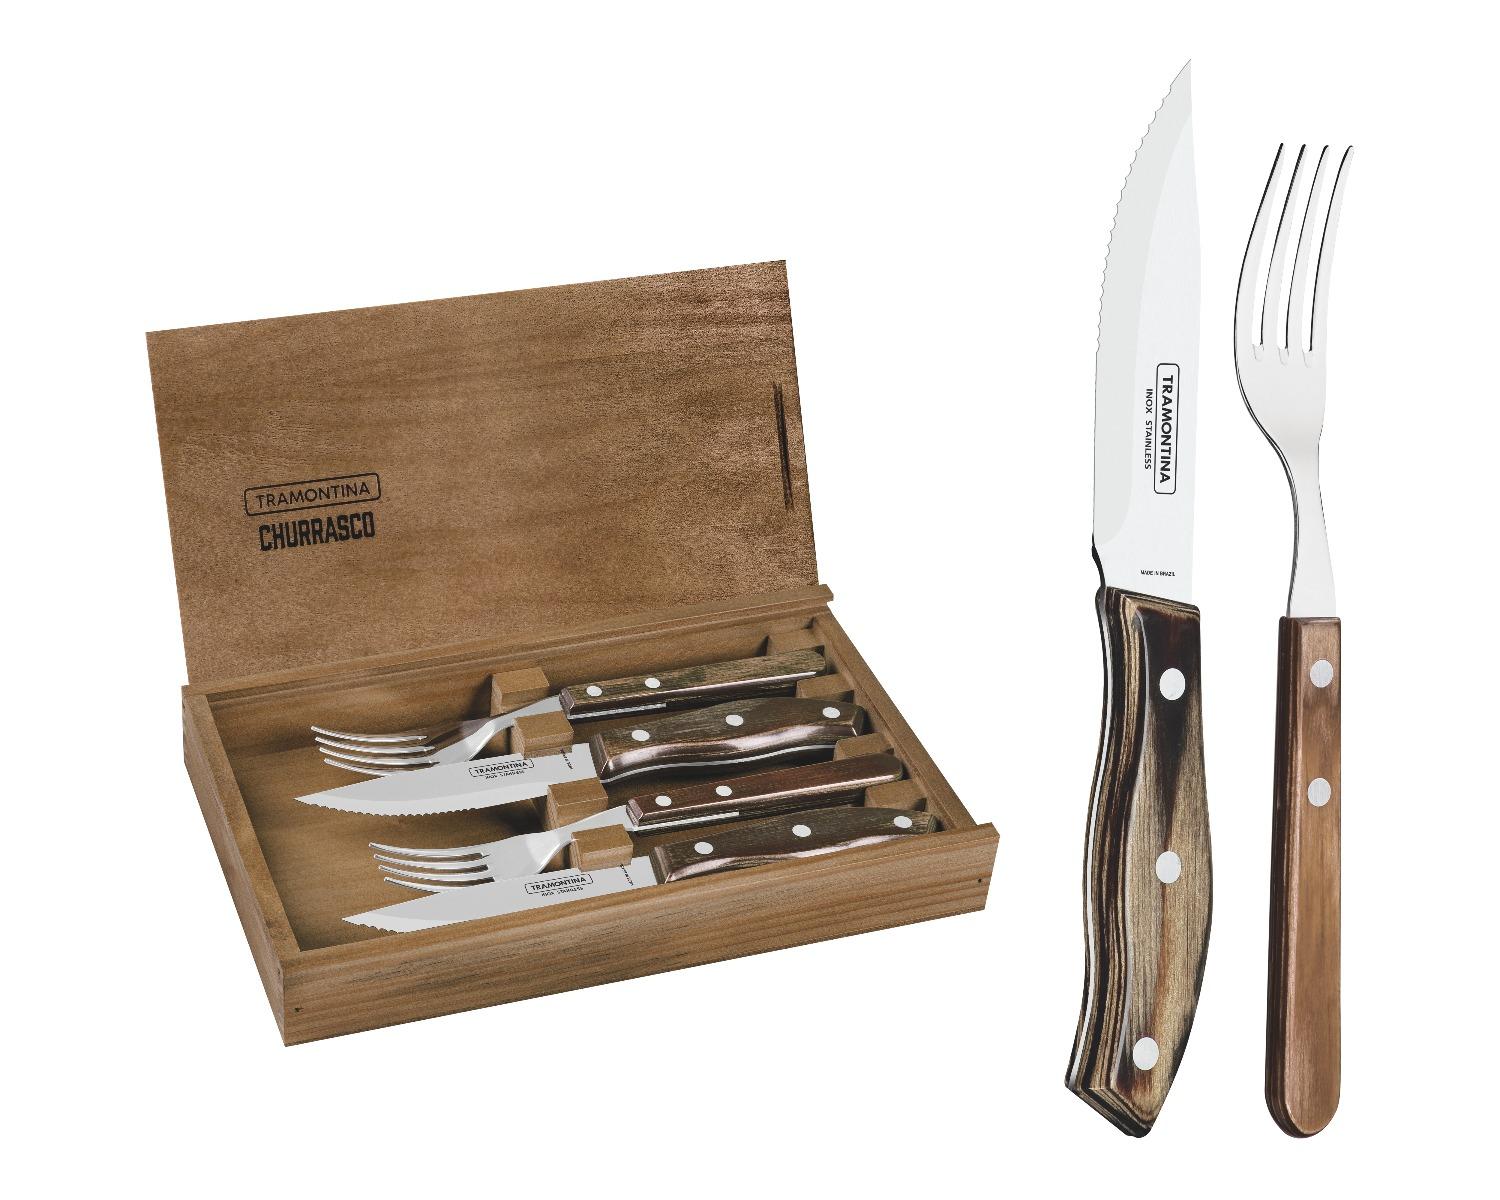 طقم ادوات مائدة (شوك وسكاكين) بمقبض خشبي حزمة 4في1 ترامونتينا Tramontina Cutlery Set with Wooden Box